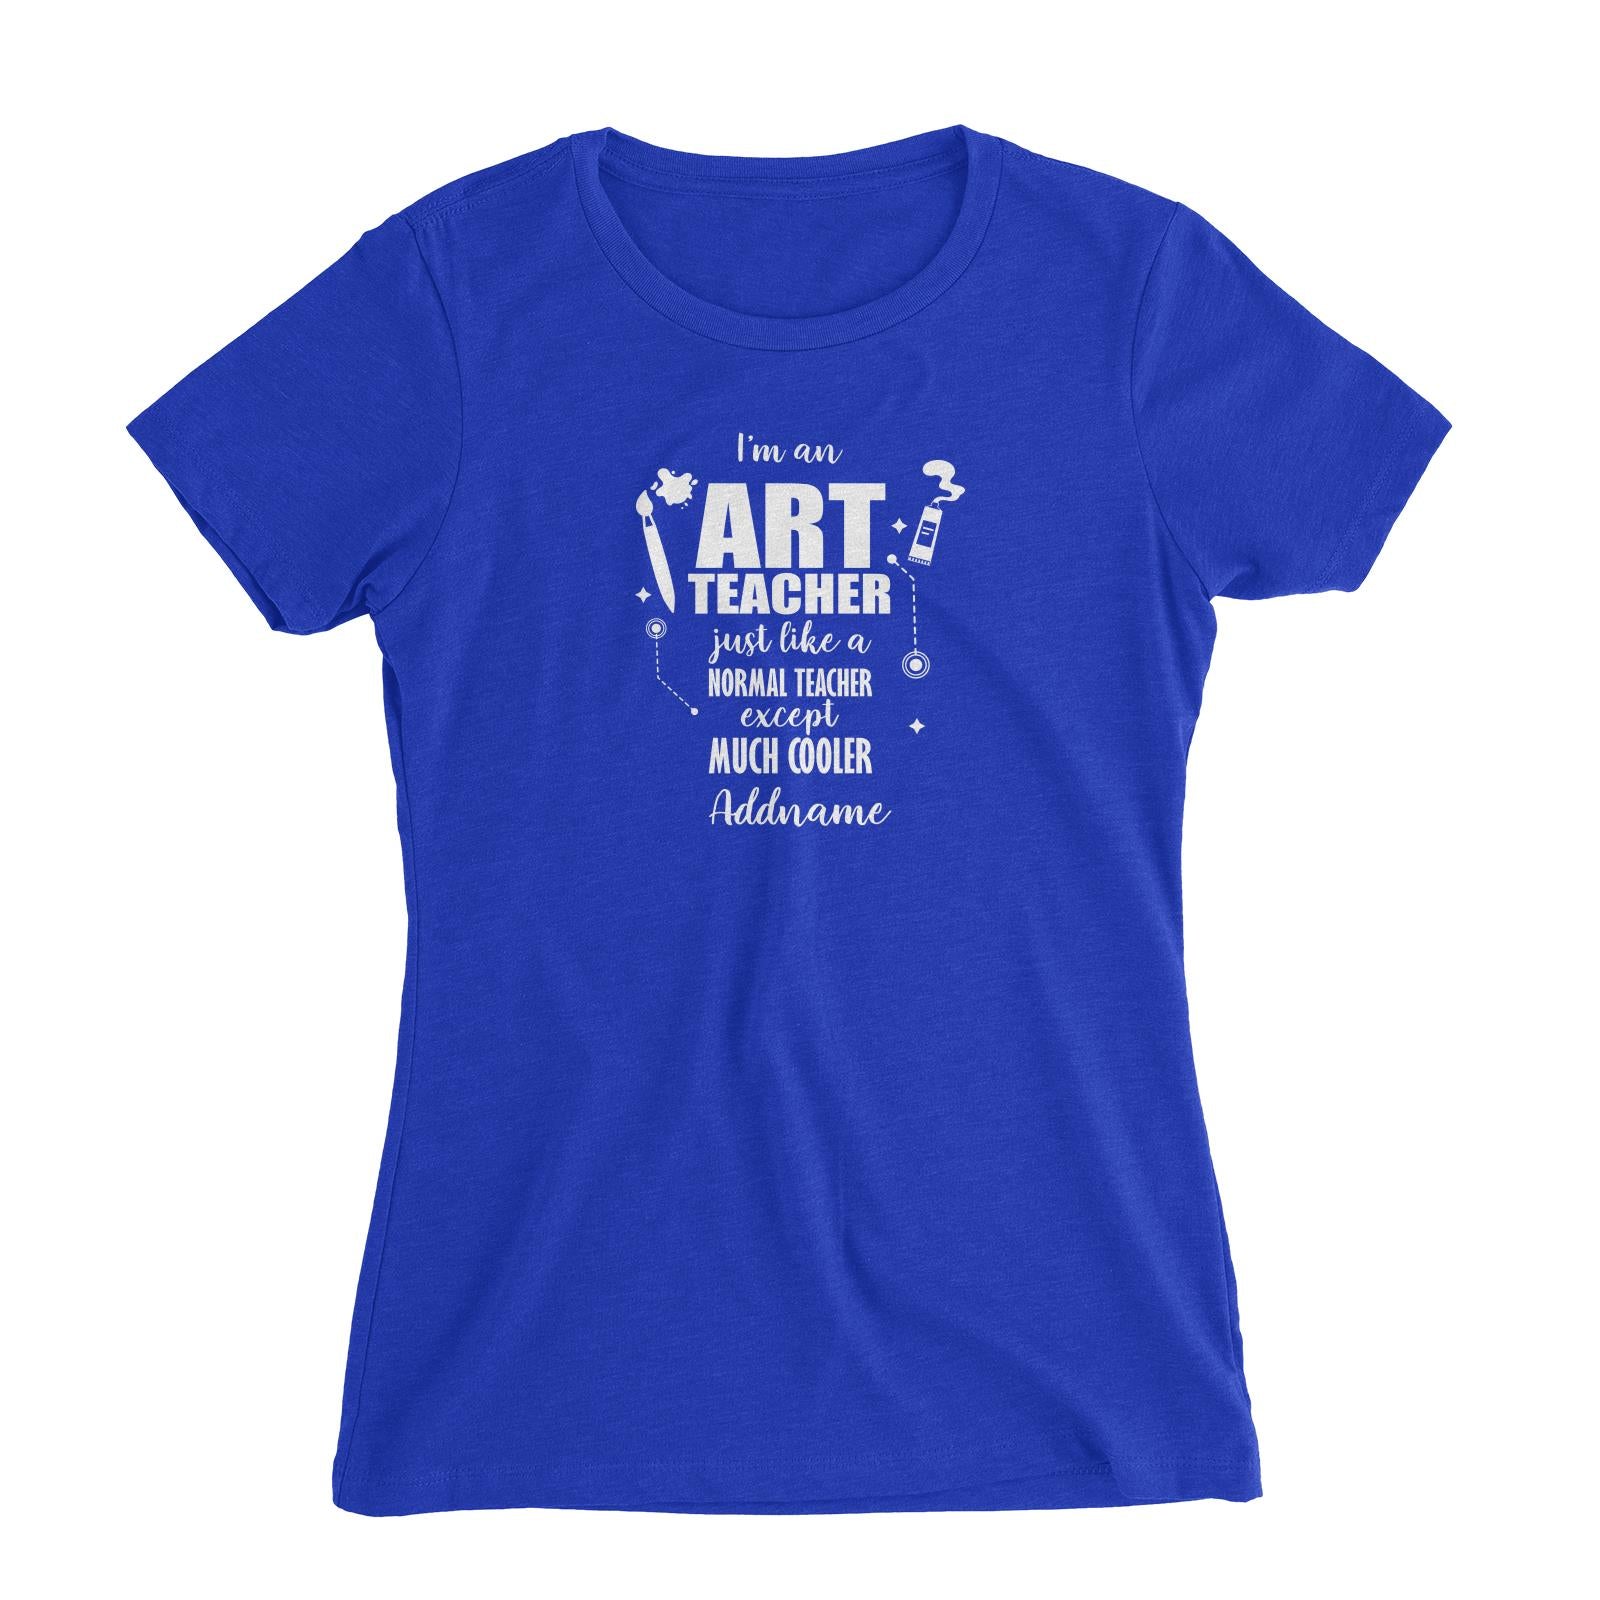 Subject Teachers 3 I'm A Art Teacher Addname Women's Slim Fit T-Shirt